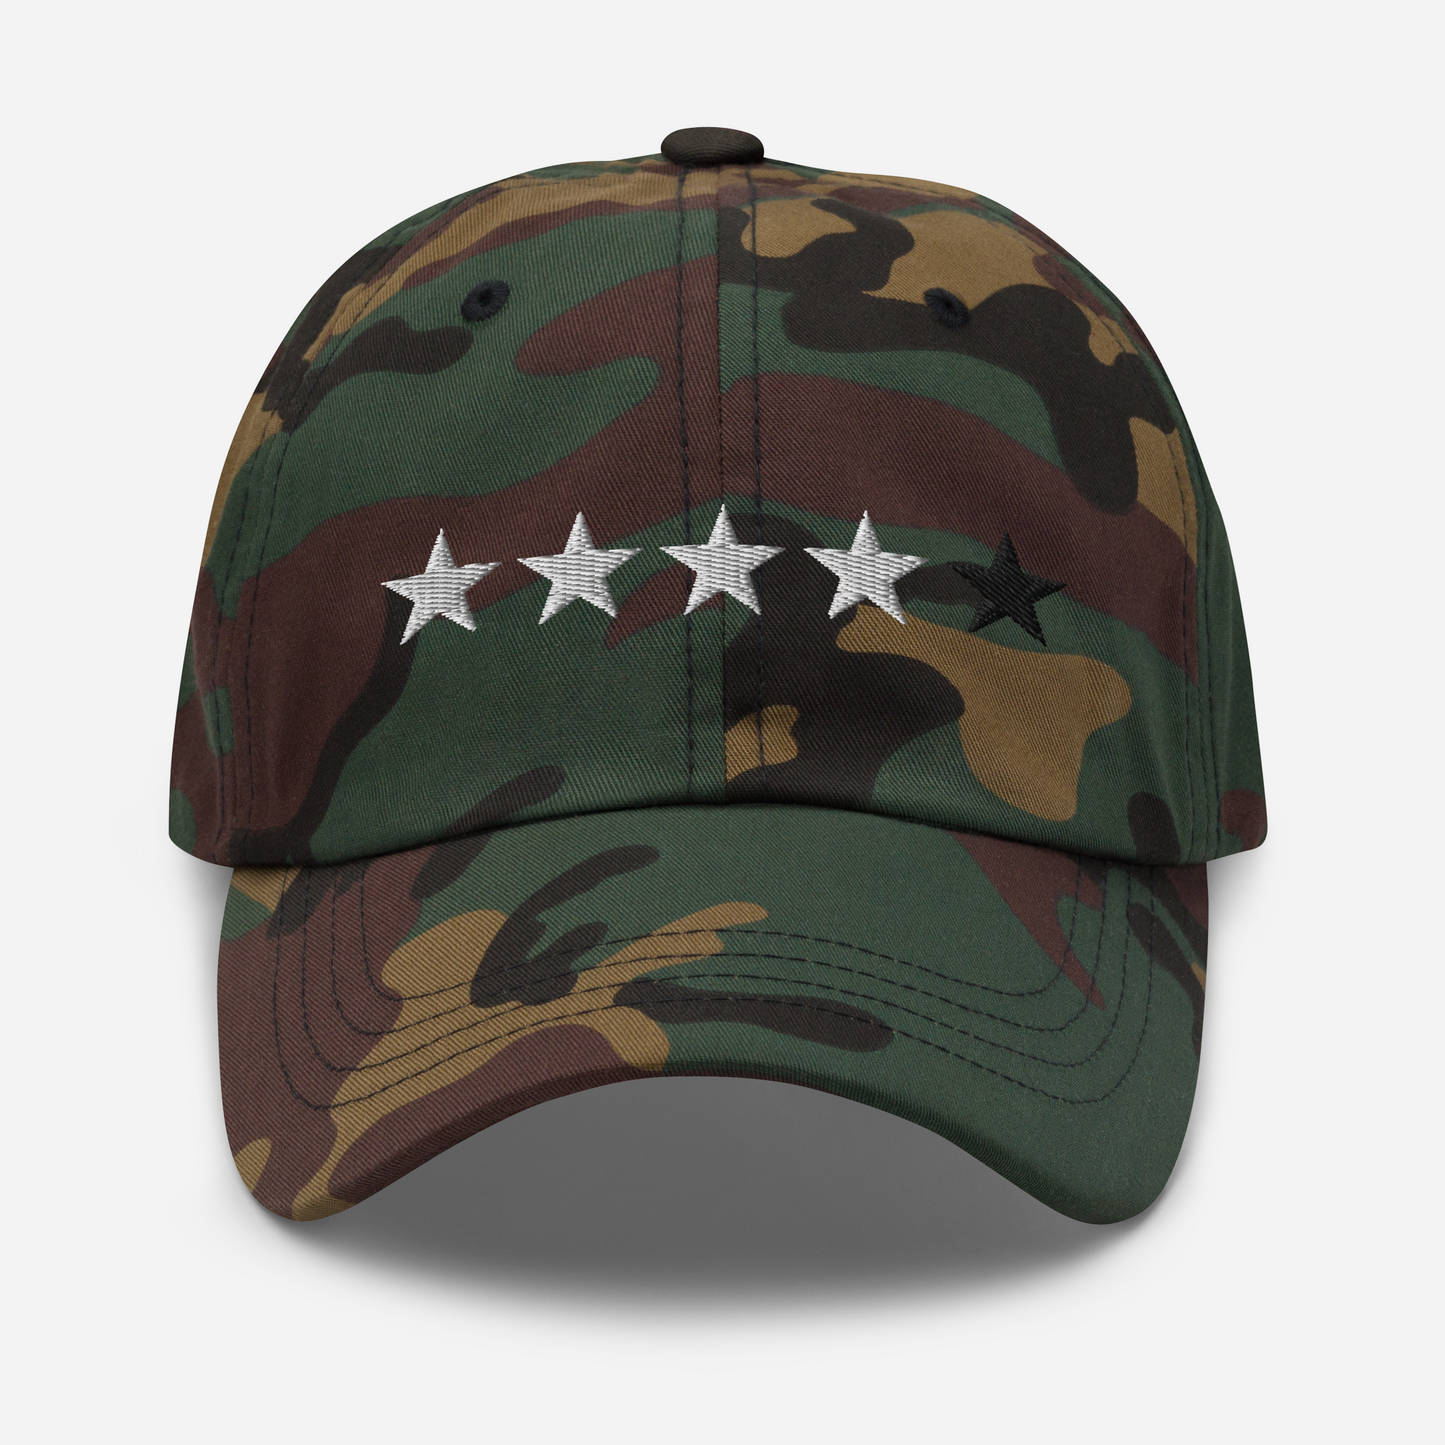 4/5 Star (Blk 5th Star) Dad hat